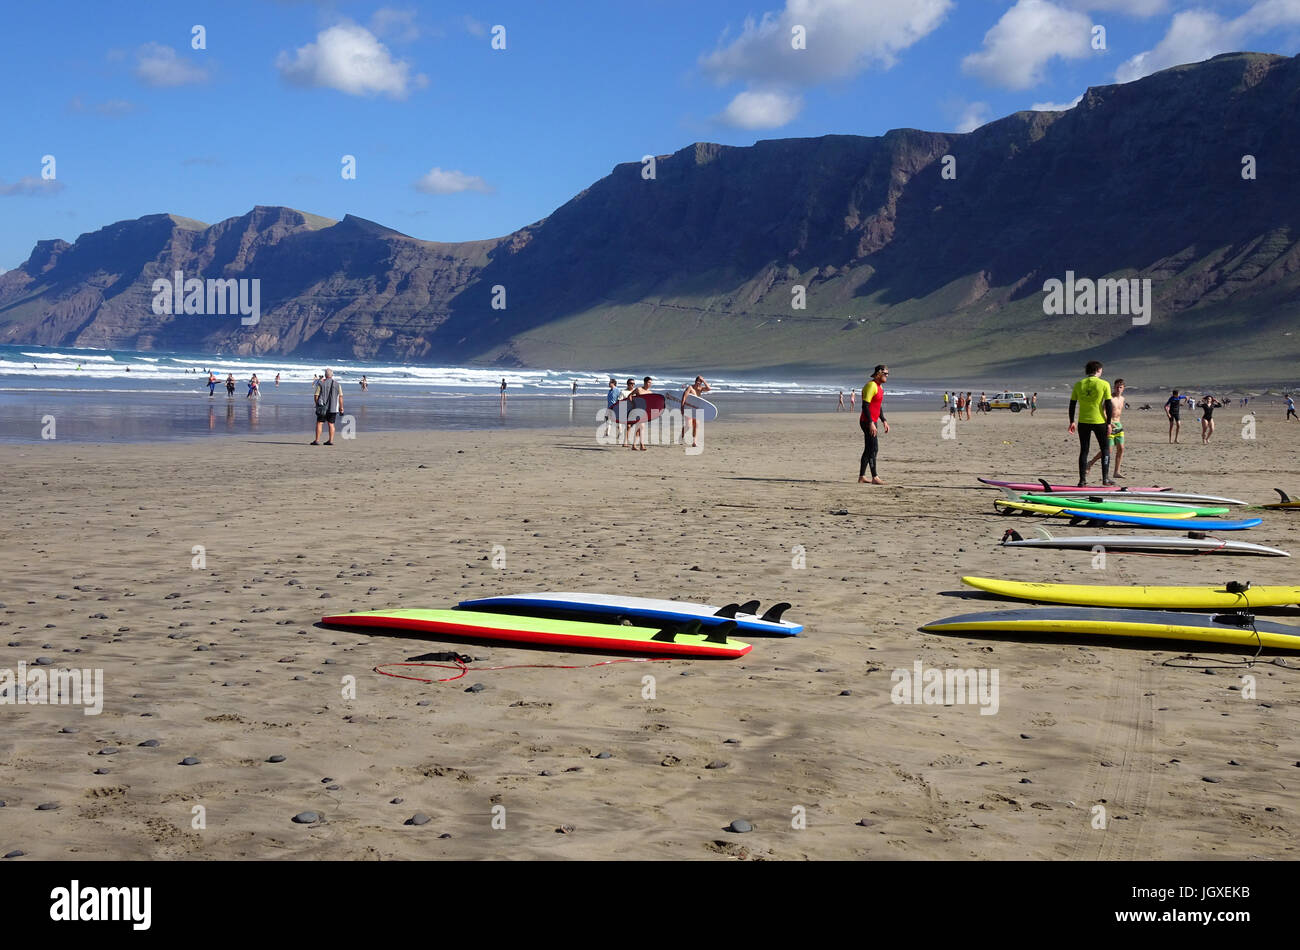 Surf surfeur mit am Strand, aufsteigendes Famara Famara Gebirge, La Caleta de Famara, Lanzarote, Kanarische Inseln, Europa | Body surfer à Famara Banque D'Images